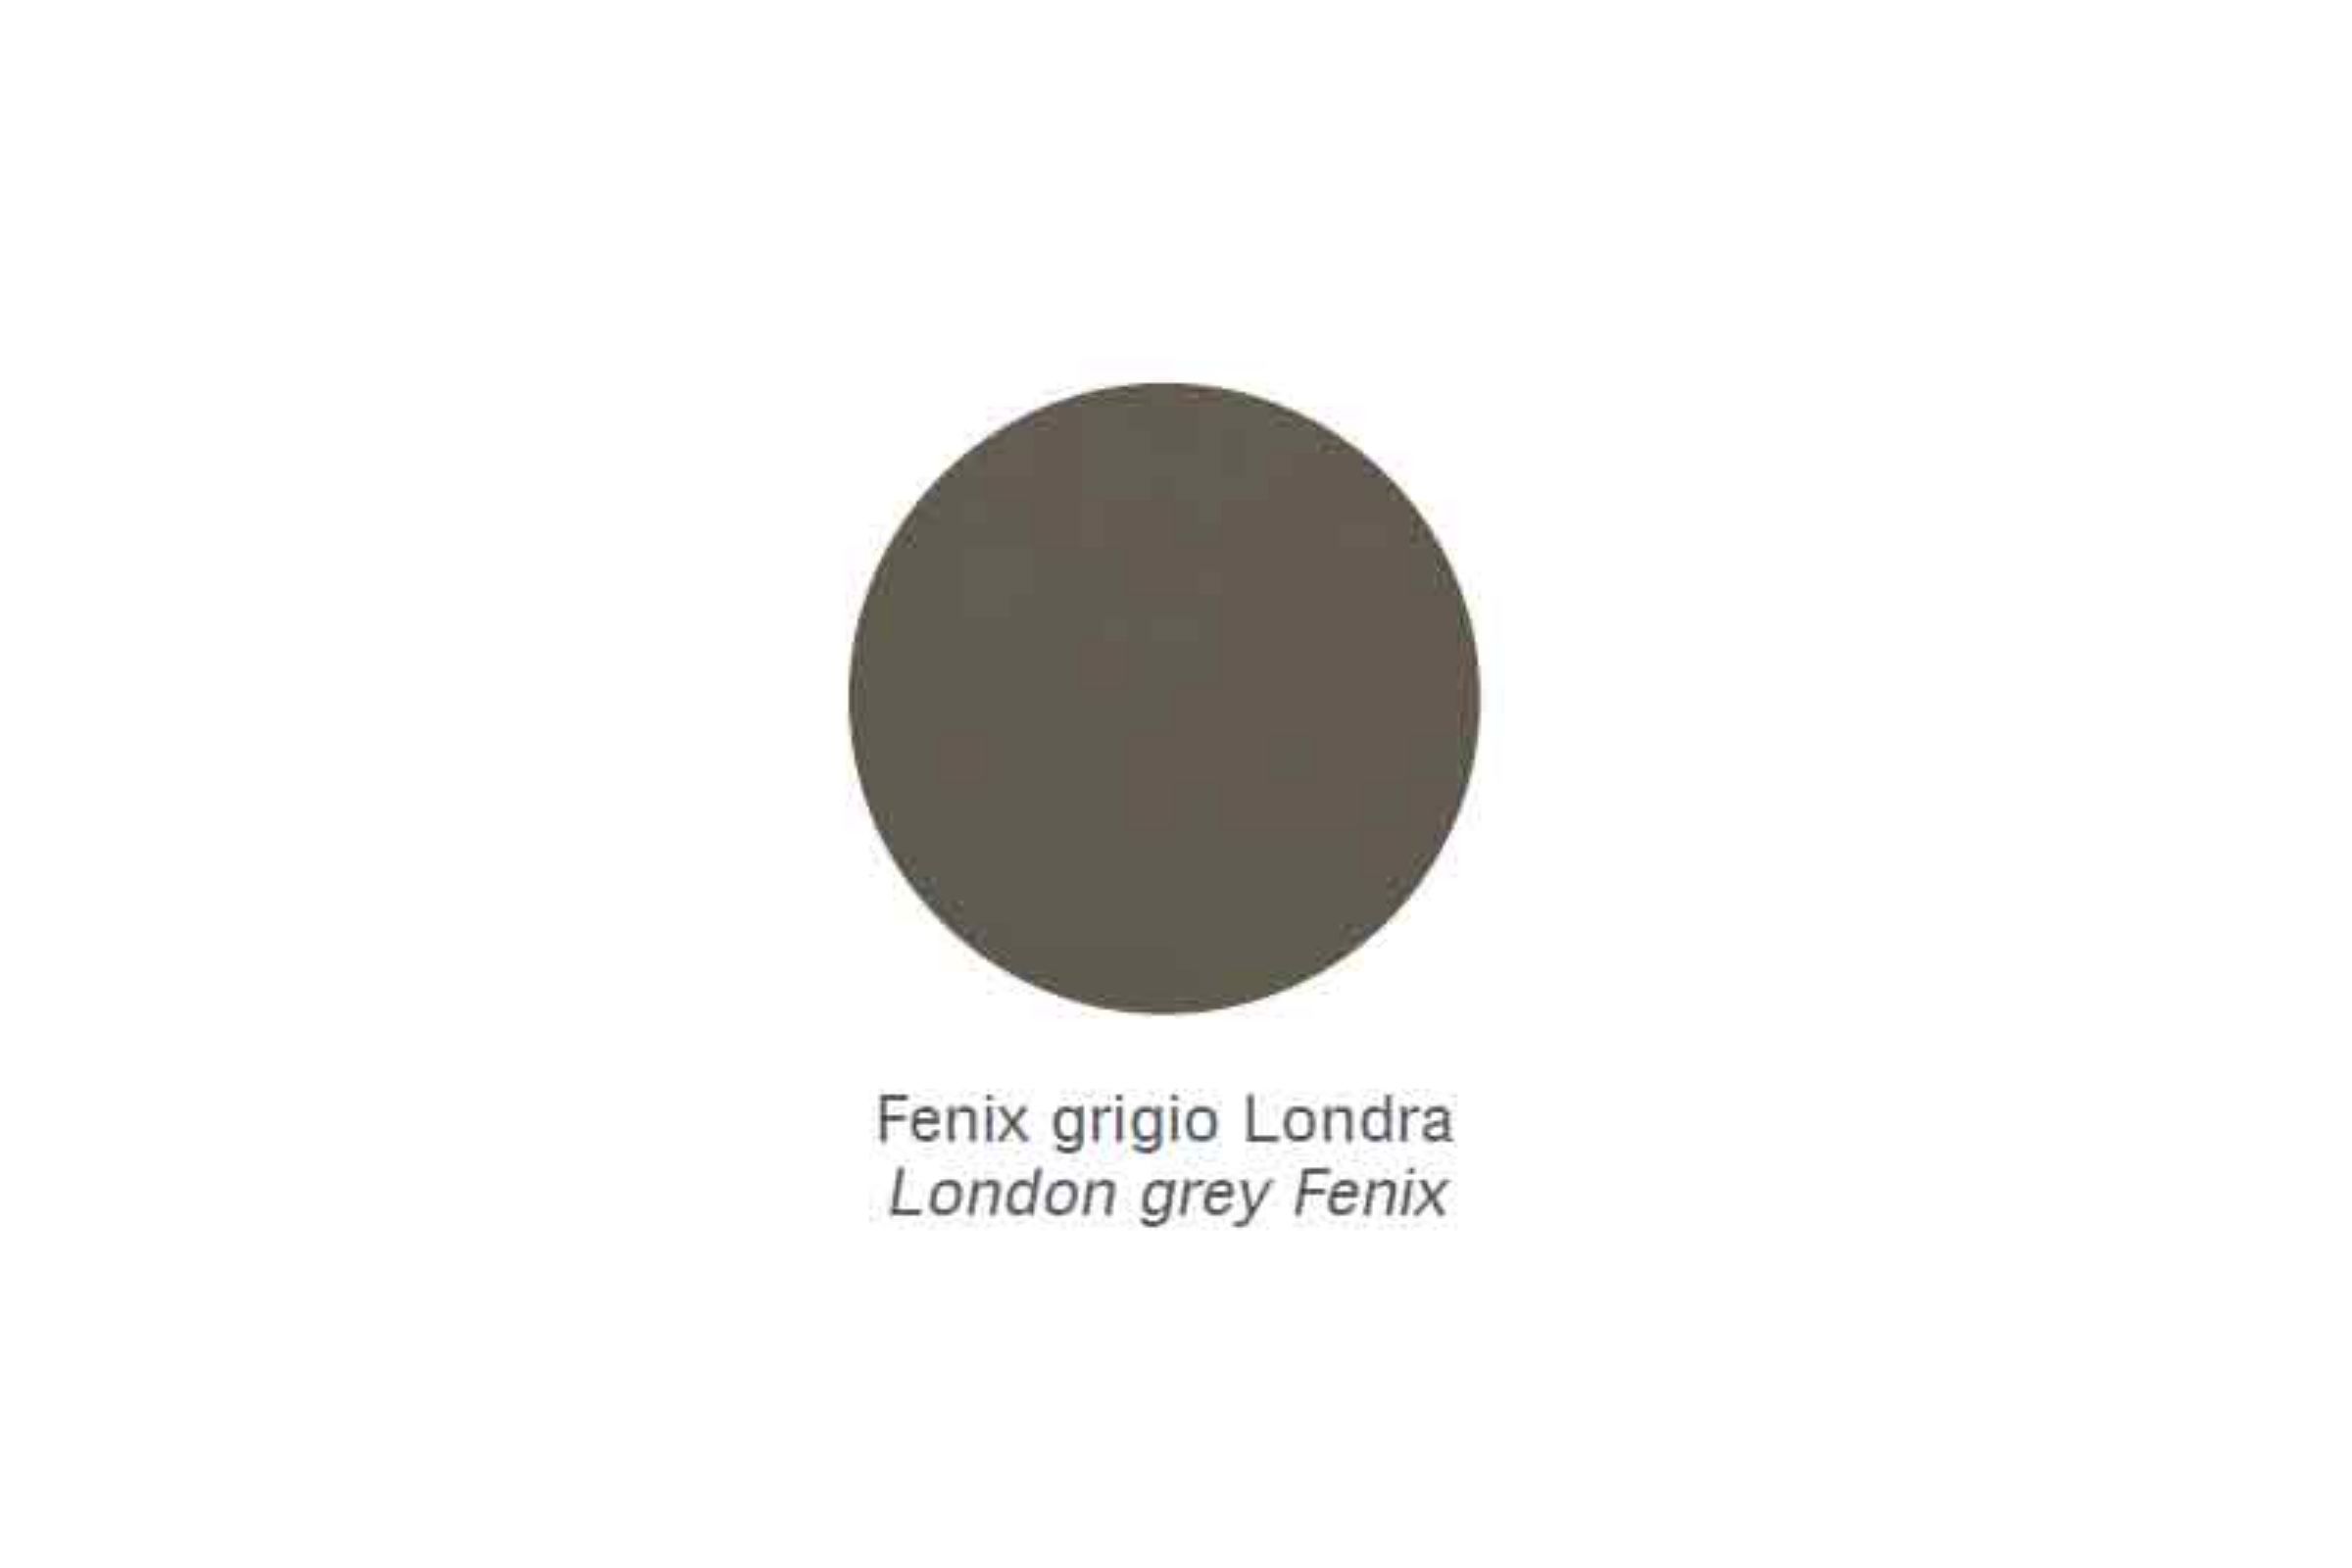 Mensola Zen /30 - Mensola Zen Fenix grigio Londra /30